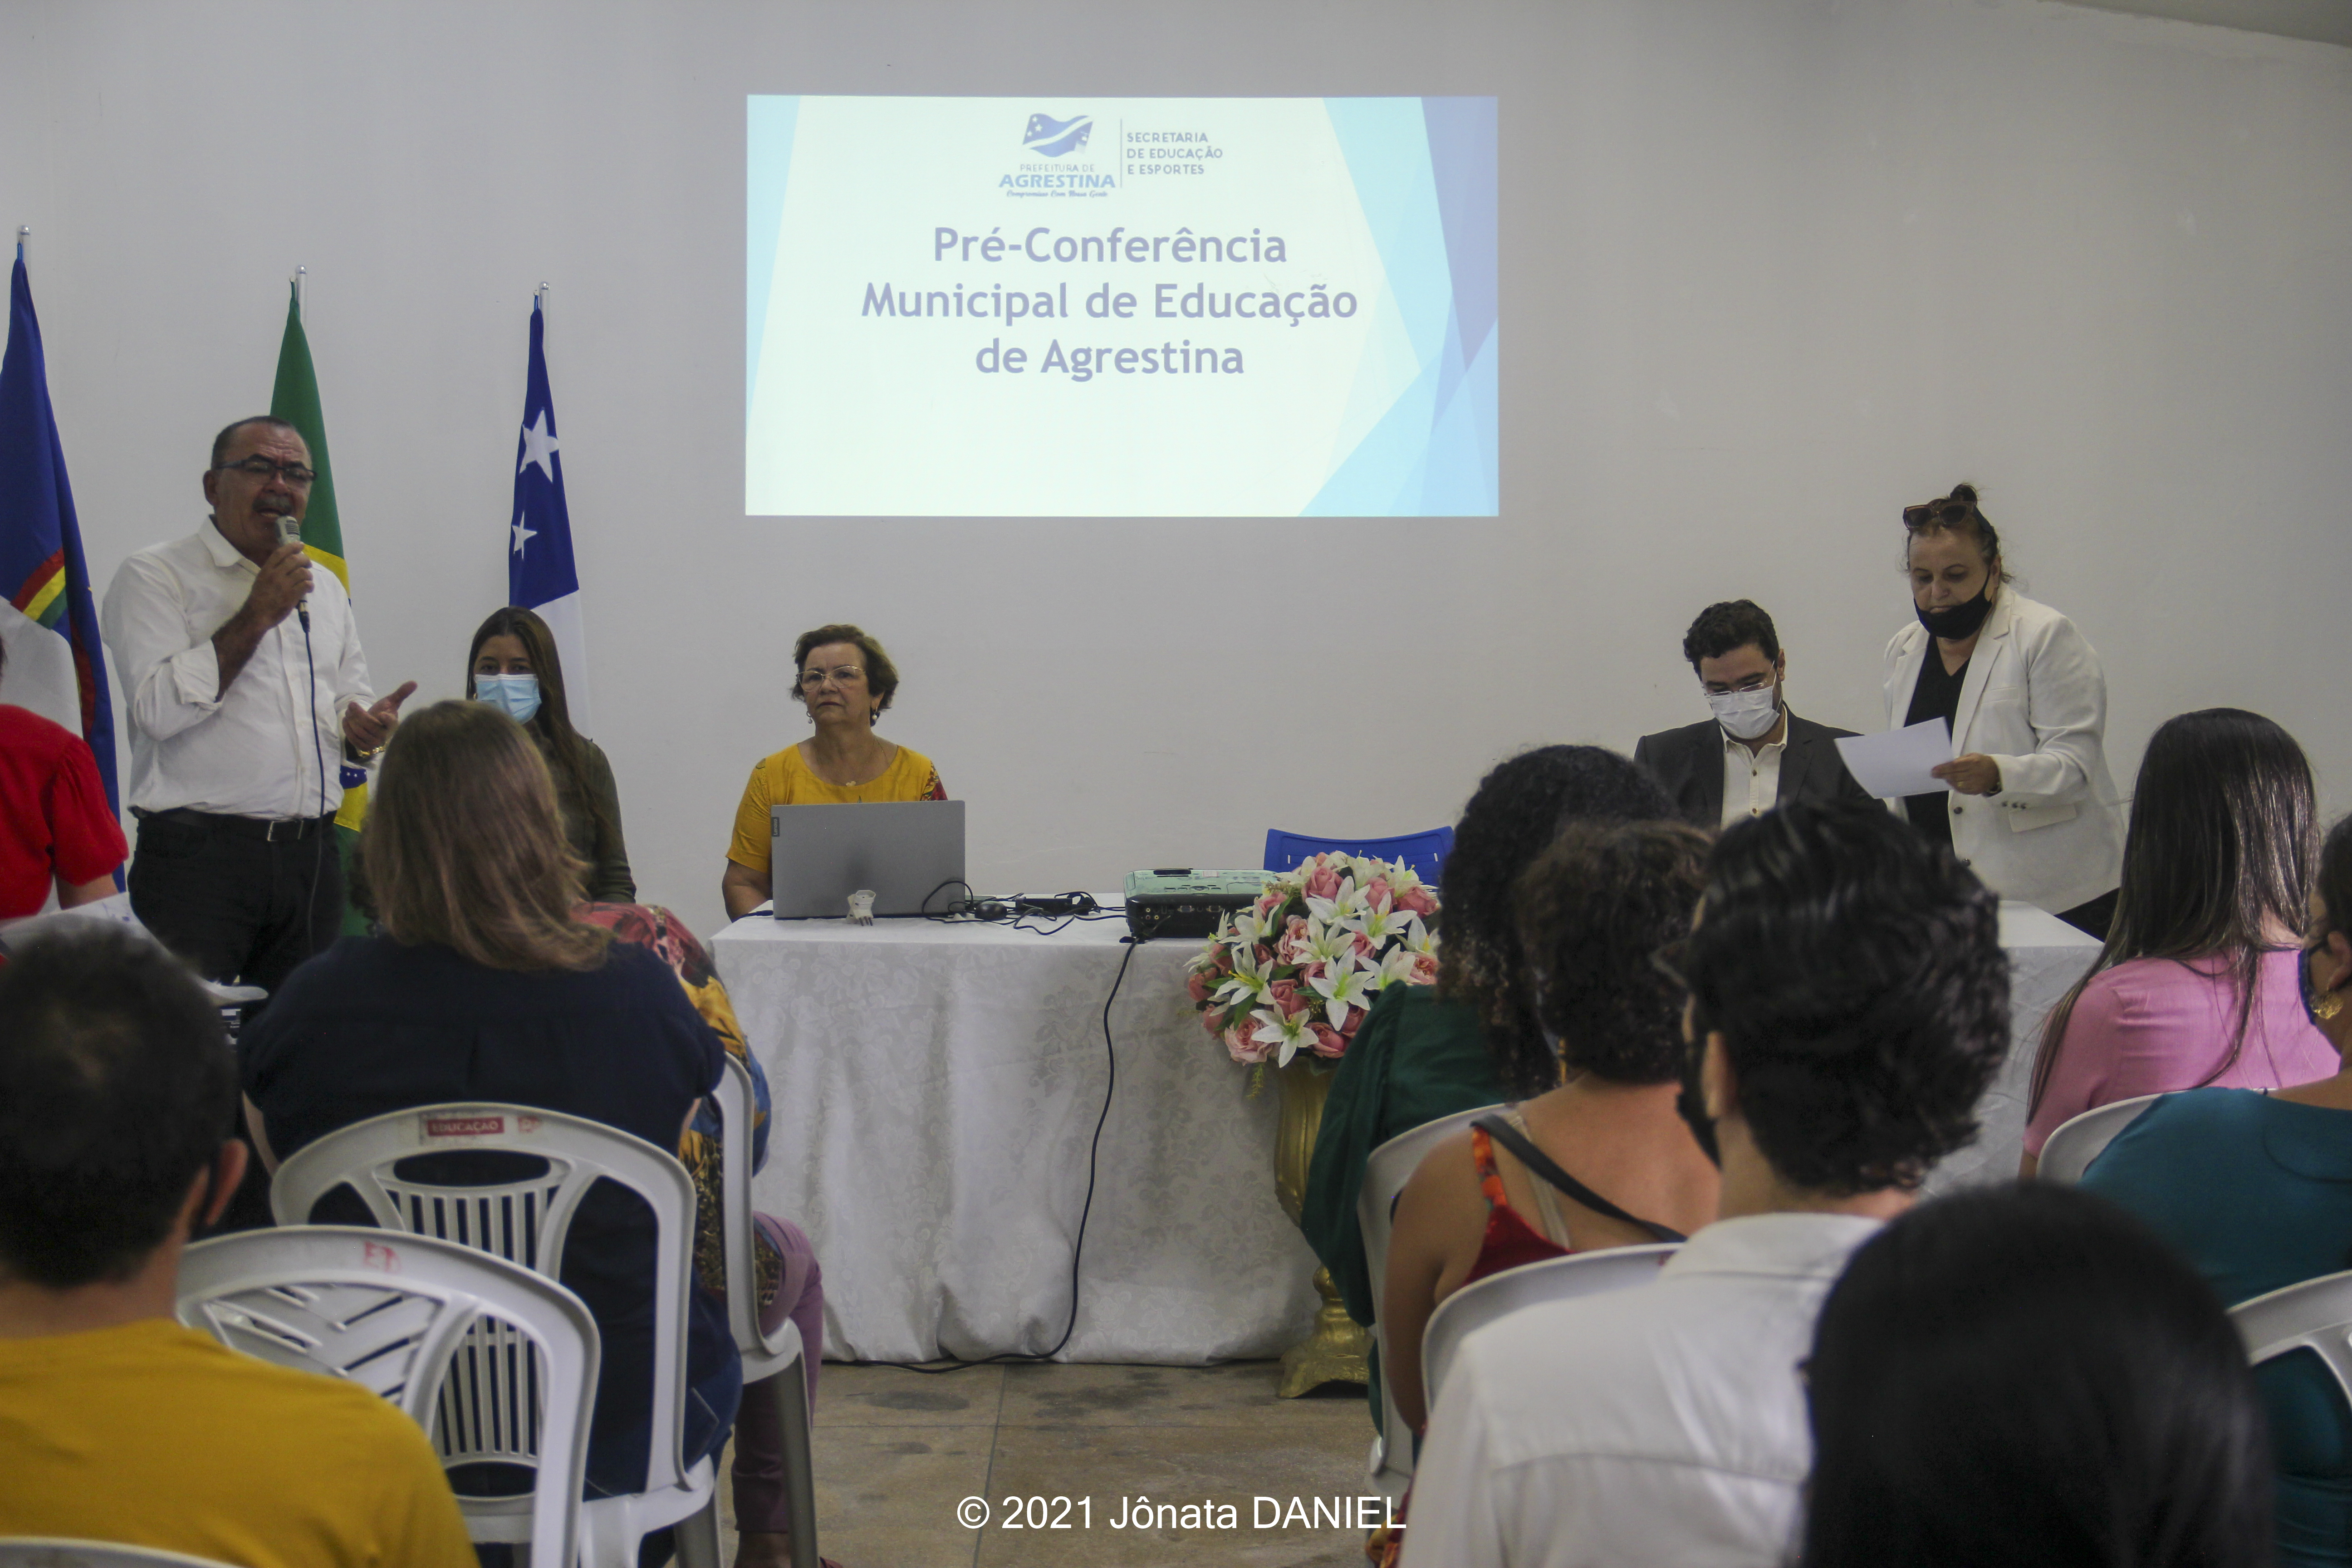  Pré-Conferência Municipal de Educação é realizada em Agrestina